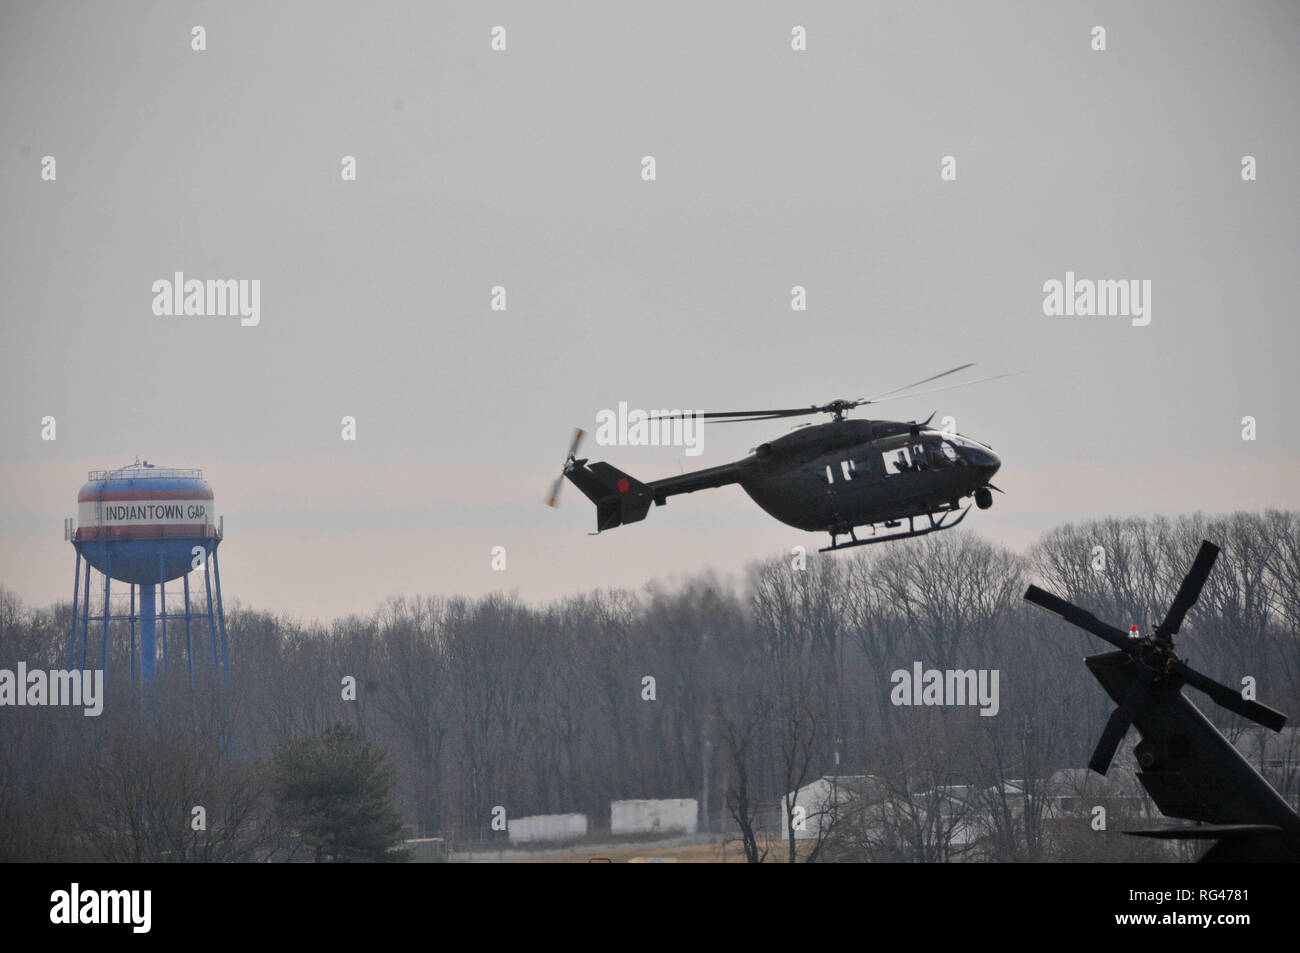 Un hélicoptère UH-72 Lakota, exploité par des soldats avec détachement 1, la Compagnie Bravo, 1-224ème régiment d'aviation, 28e Brigade d'aviation de combat expéditionnaire, mouches autour de Fort Indiantown Gap Le 27 janvier 2019. Banque D'Images